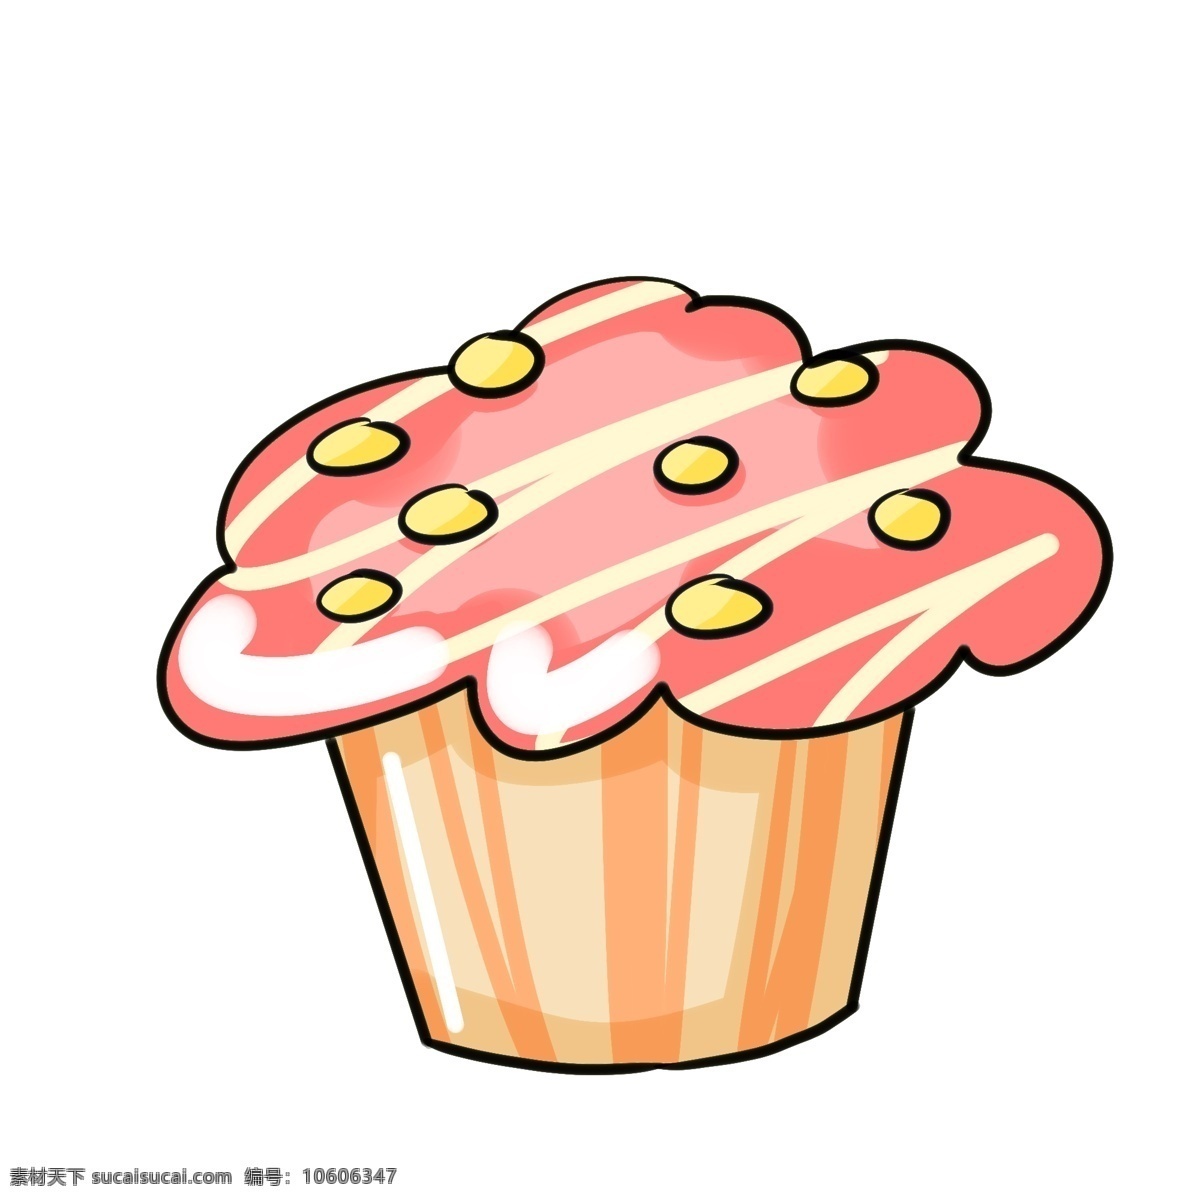 粉色 纸杯 蛋糕 插画 粉色的蛋糕 纸杯蛋糕 手绘蛋糕插画 美食插画 甜食插画 手绘甜品 卡通食物